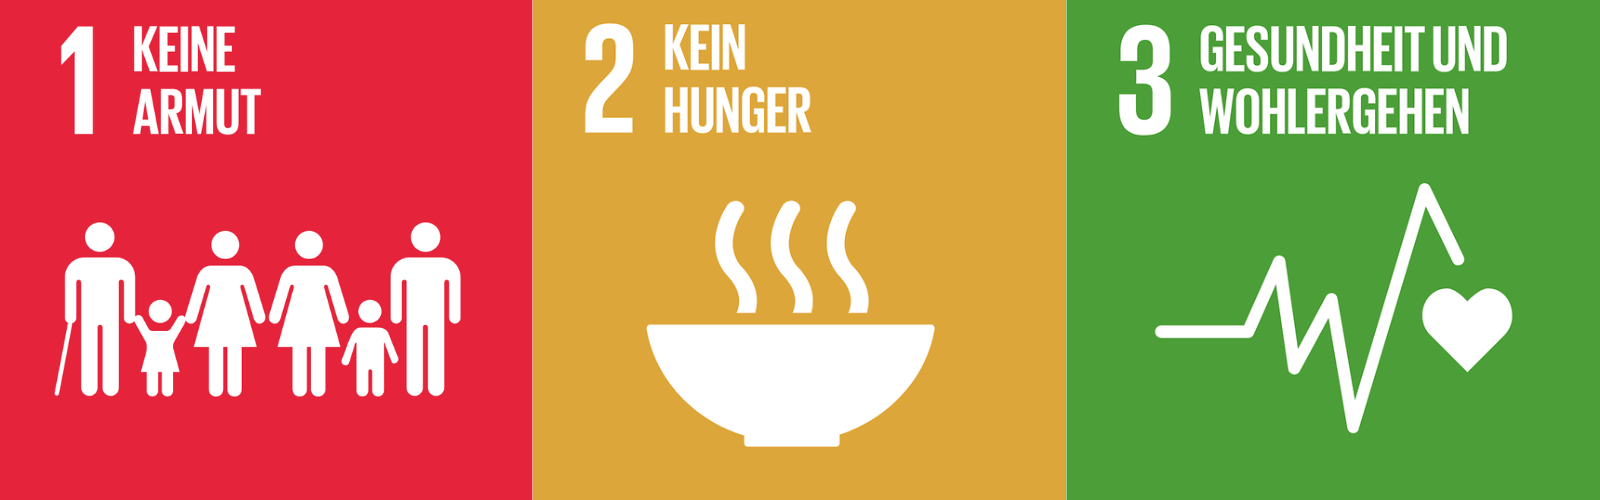 SDG 1: Keine Armut, SDG 2: Kein Hunger, SDG 3: Gesundheit und Wohlergehen